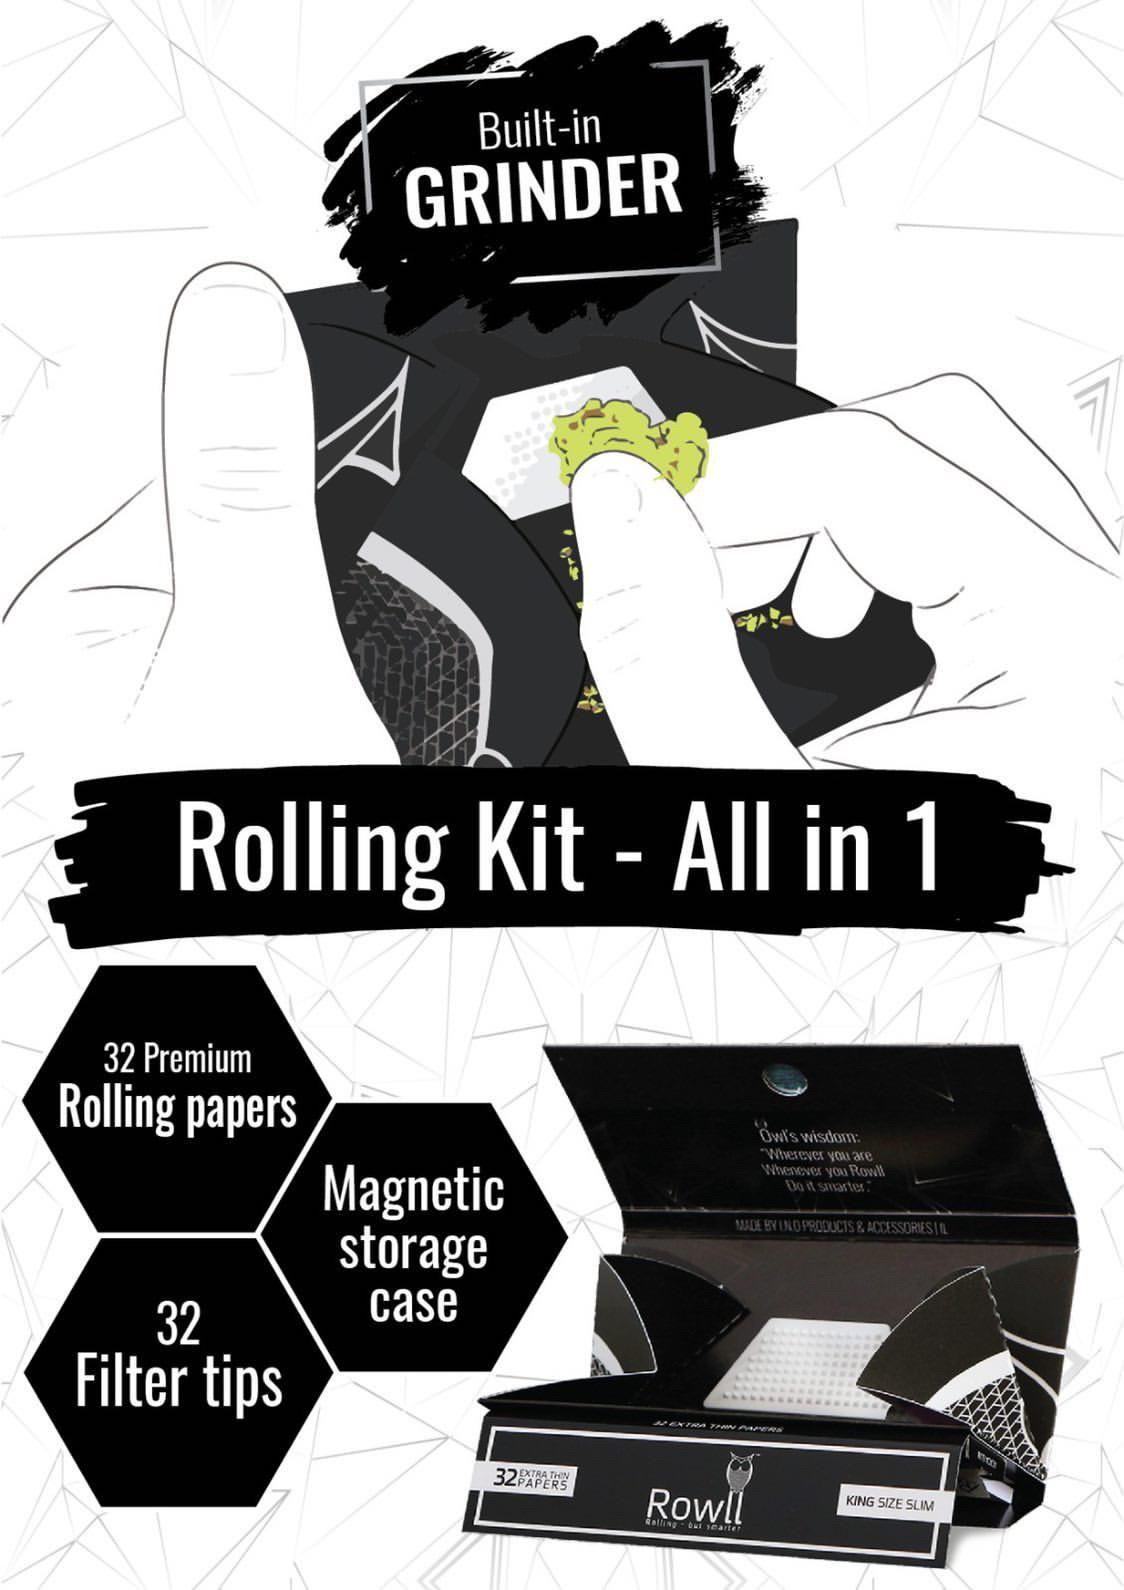 Keep Rolling Kit